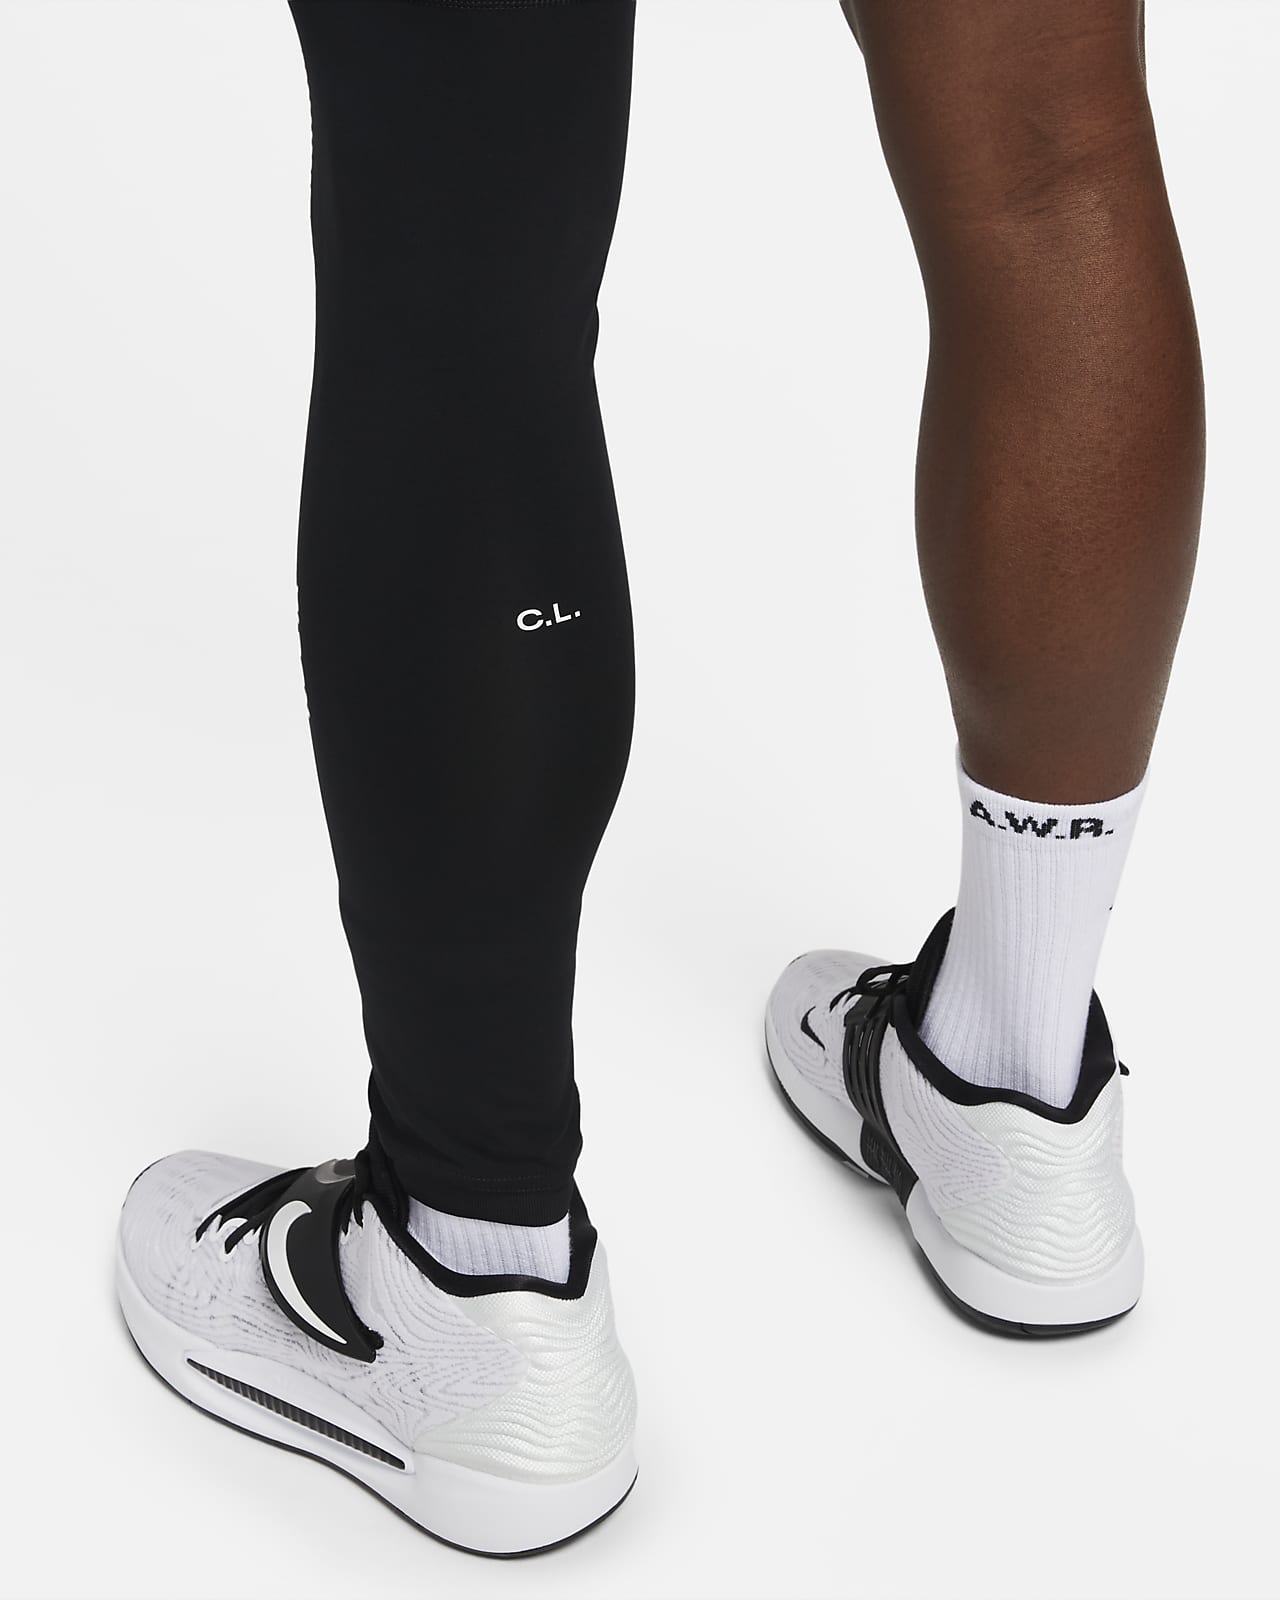 NOCTA Men's Single-Leg Tights (Left). Nike PH